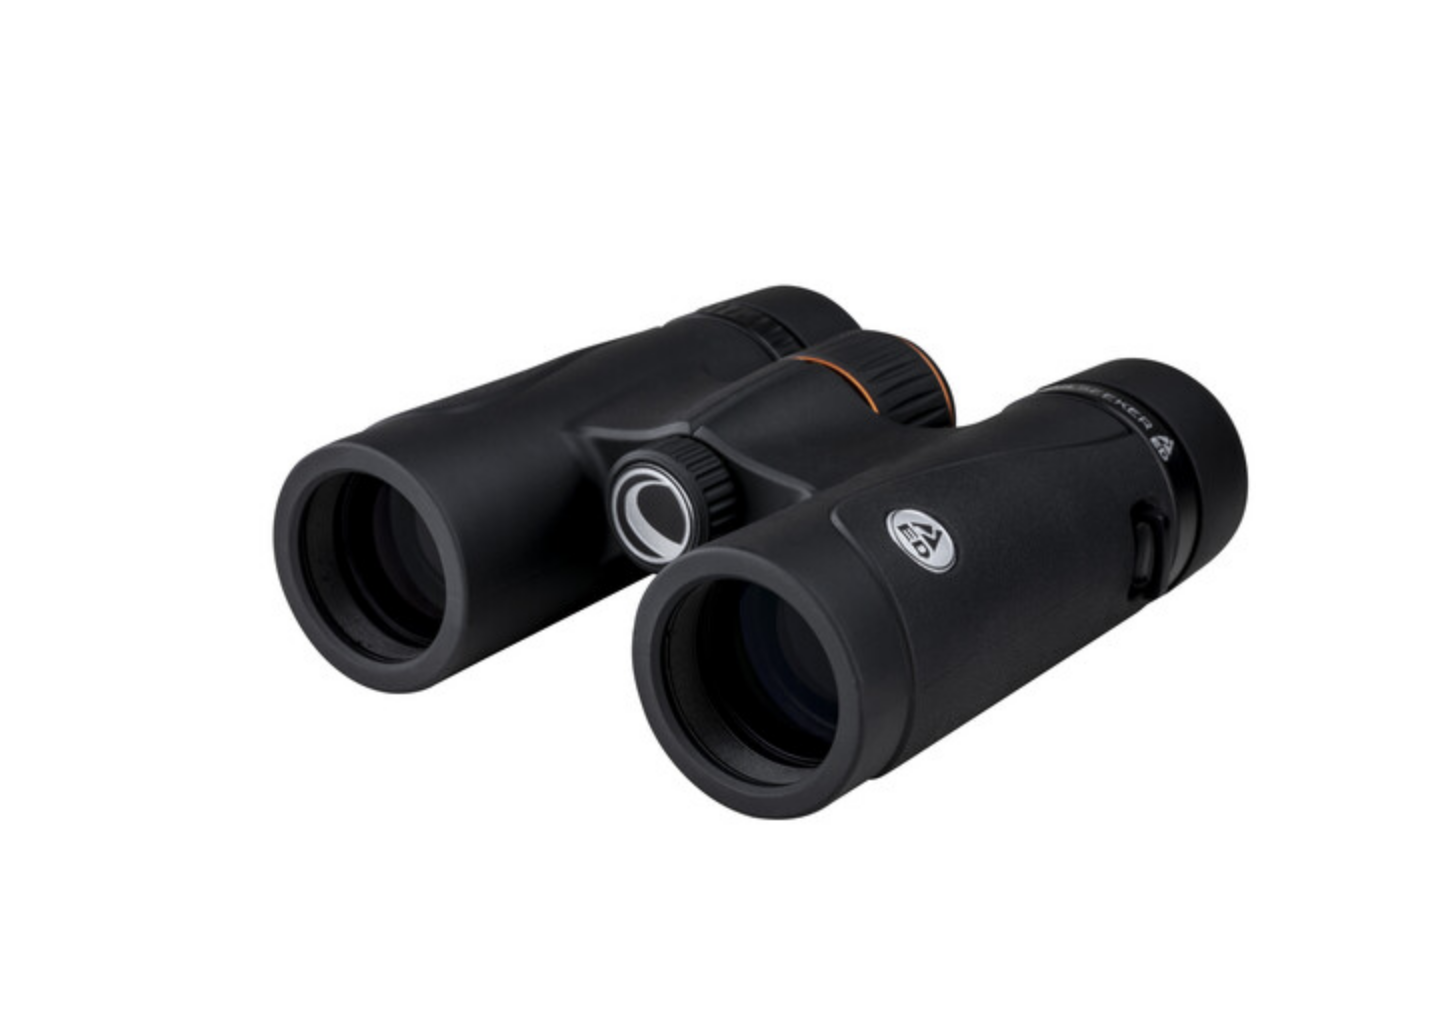 Celestron Trailseeker 8X32 ED Binoculars